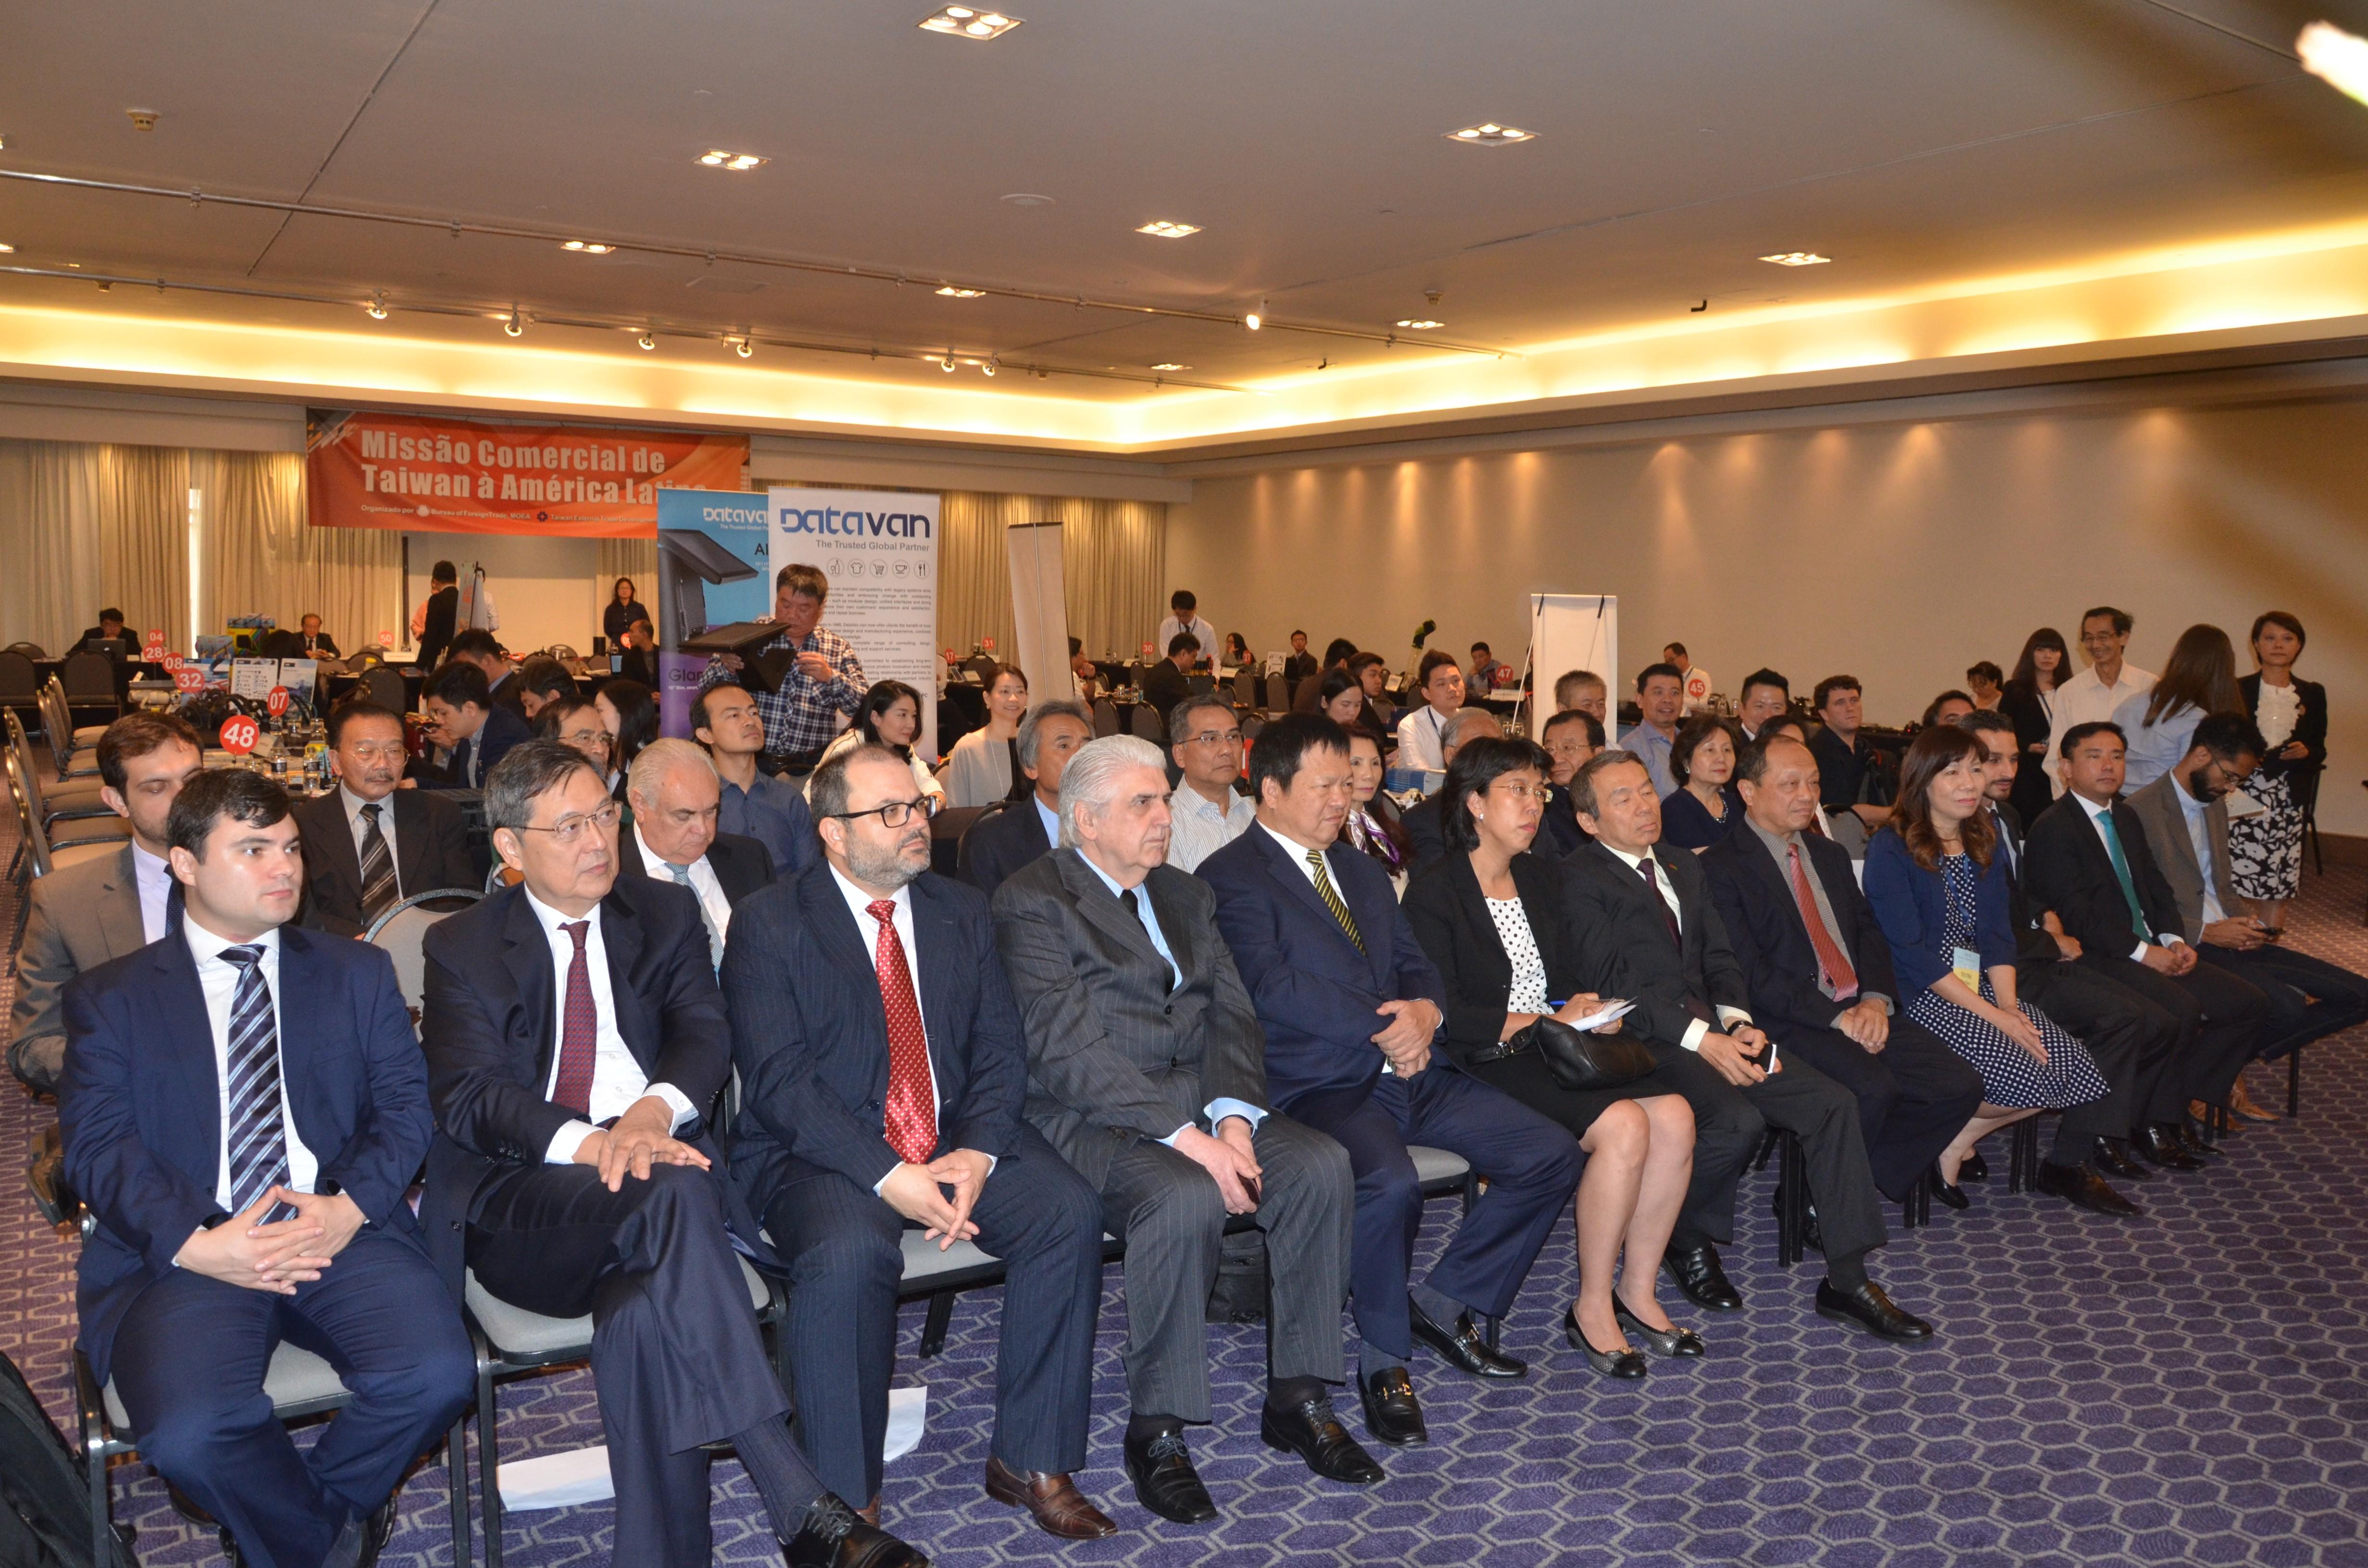 Cerimônia de abertura do Encontro de Negócios com fornecedores de Taiwan. O evento foi realizado em 22 de março de 2018 em São Paulo. 